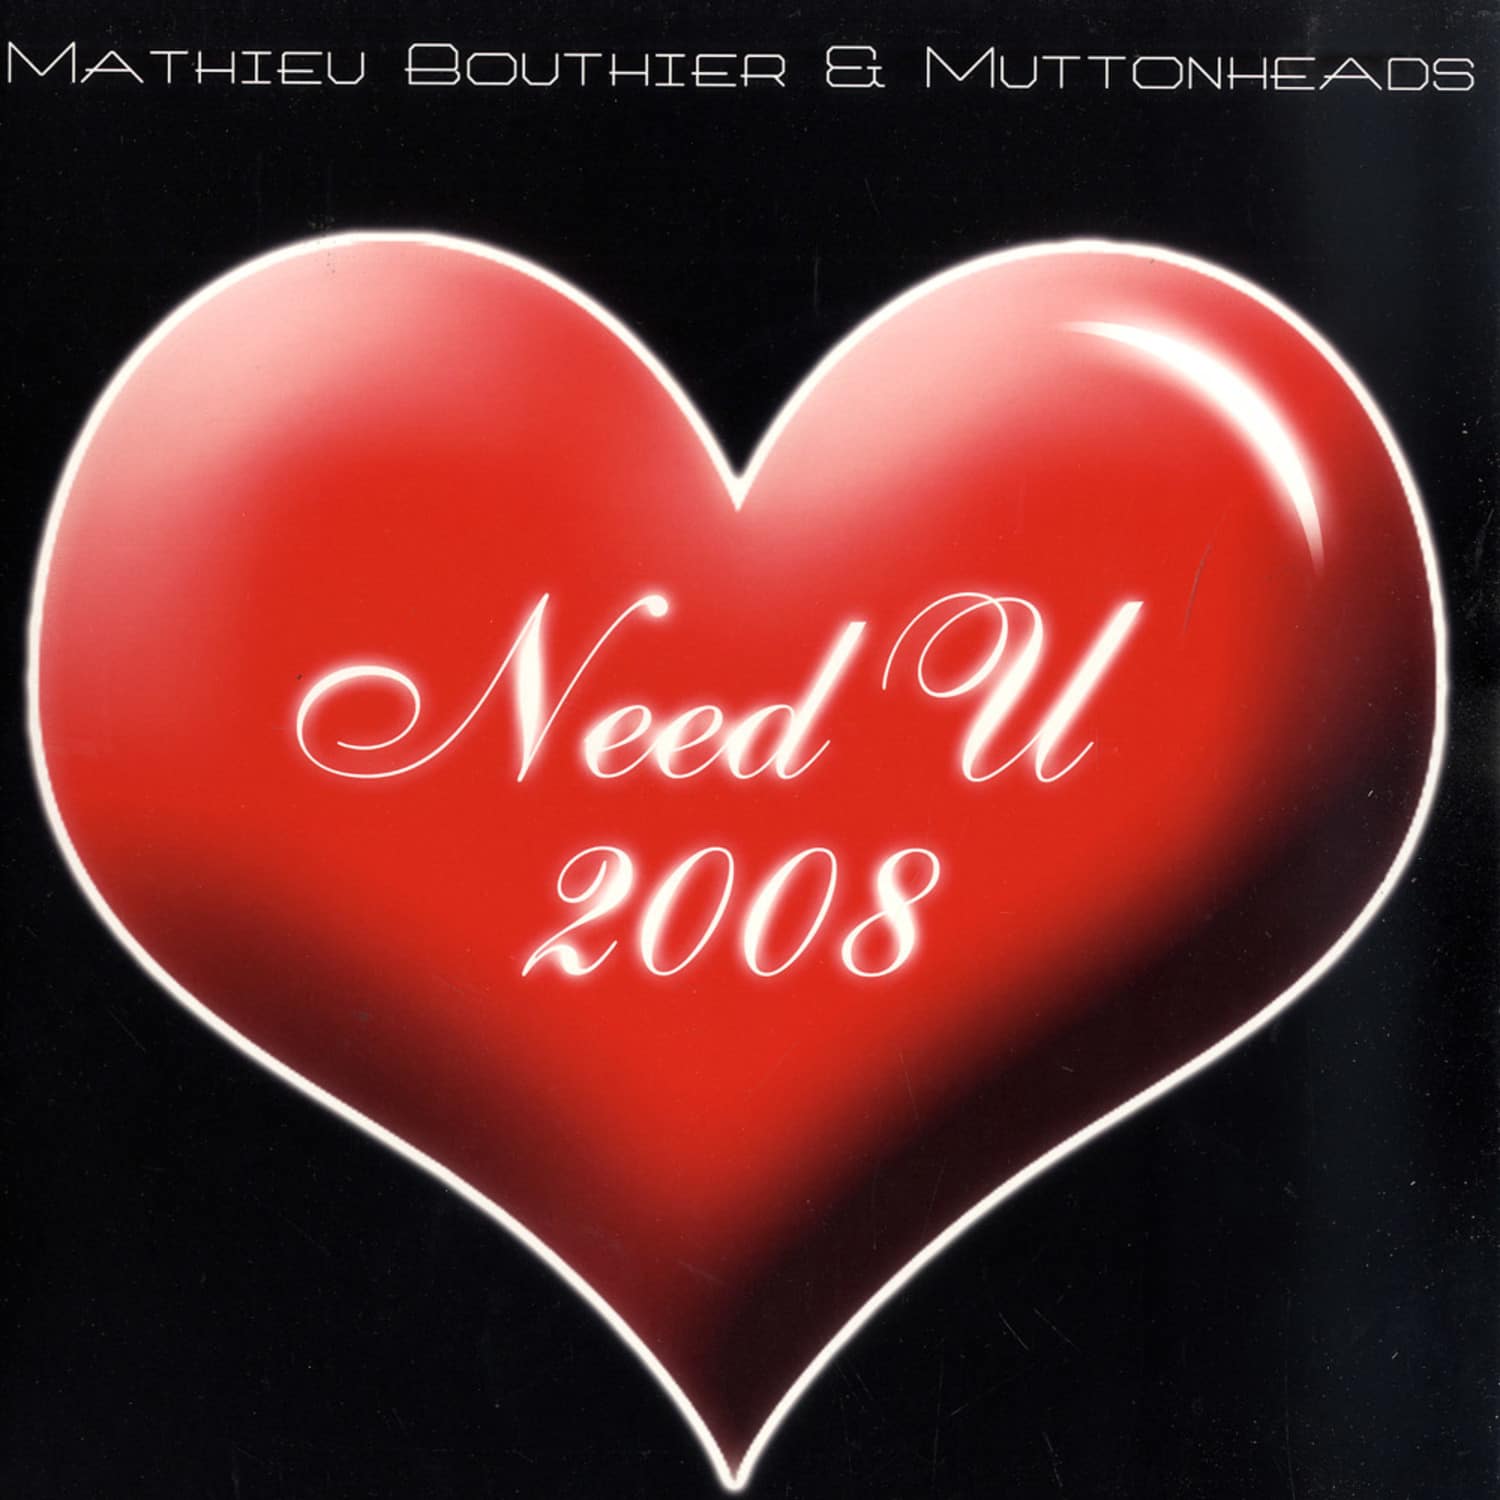 Matthieu Boutier & Muttonheads - NEED U 2008